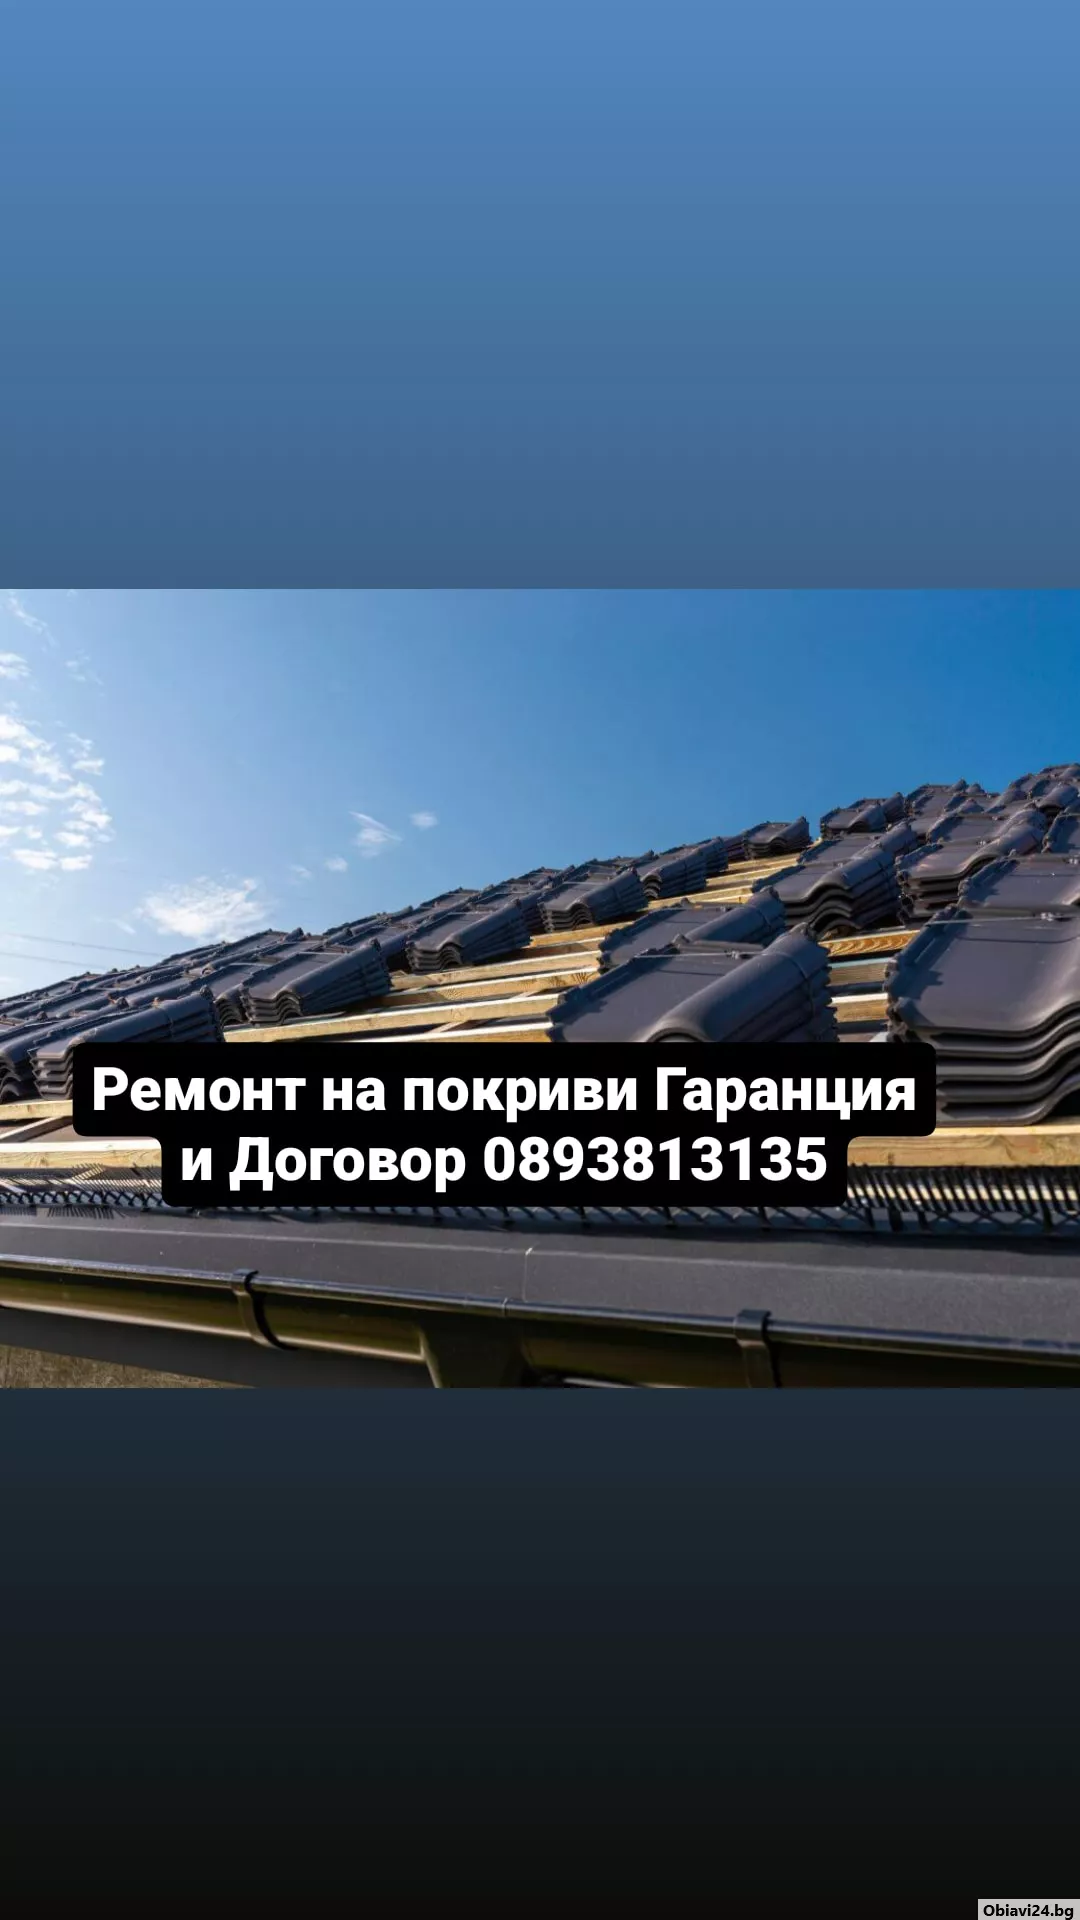 Навеси покриви нови покриви Частичен Ремонт на покрив отстраняване на течове - obiavi24.bg